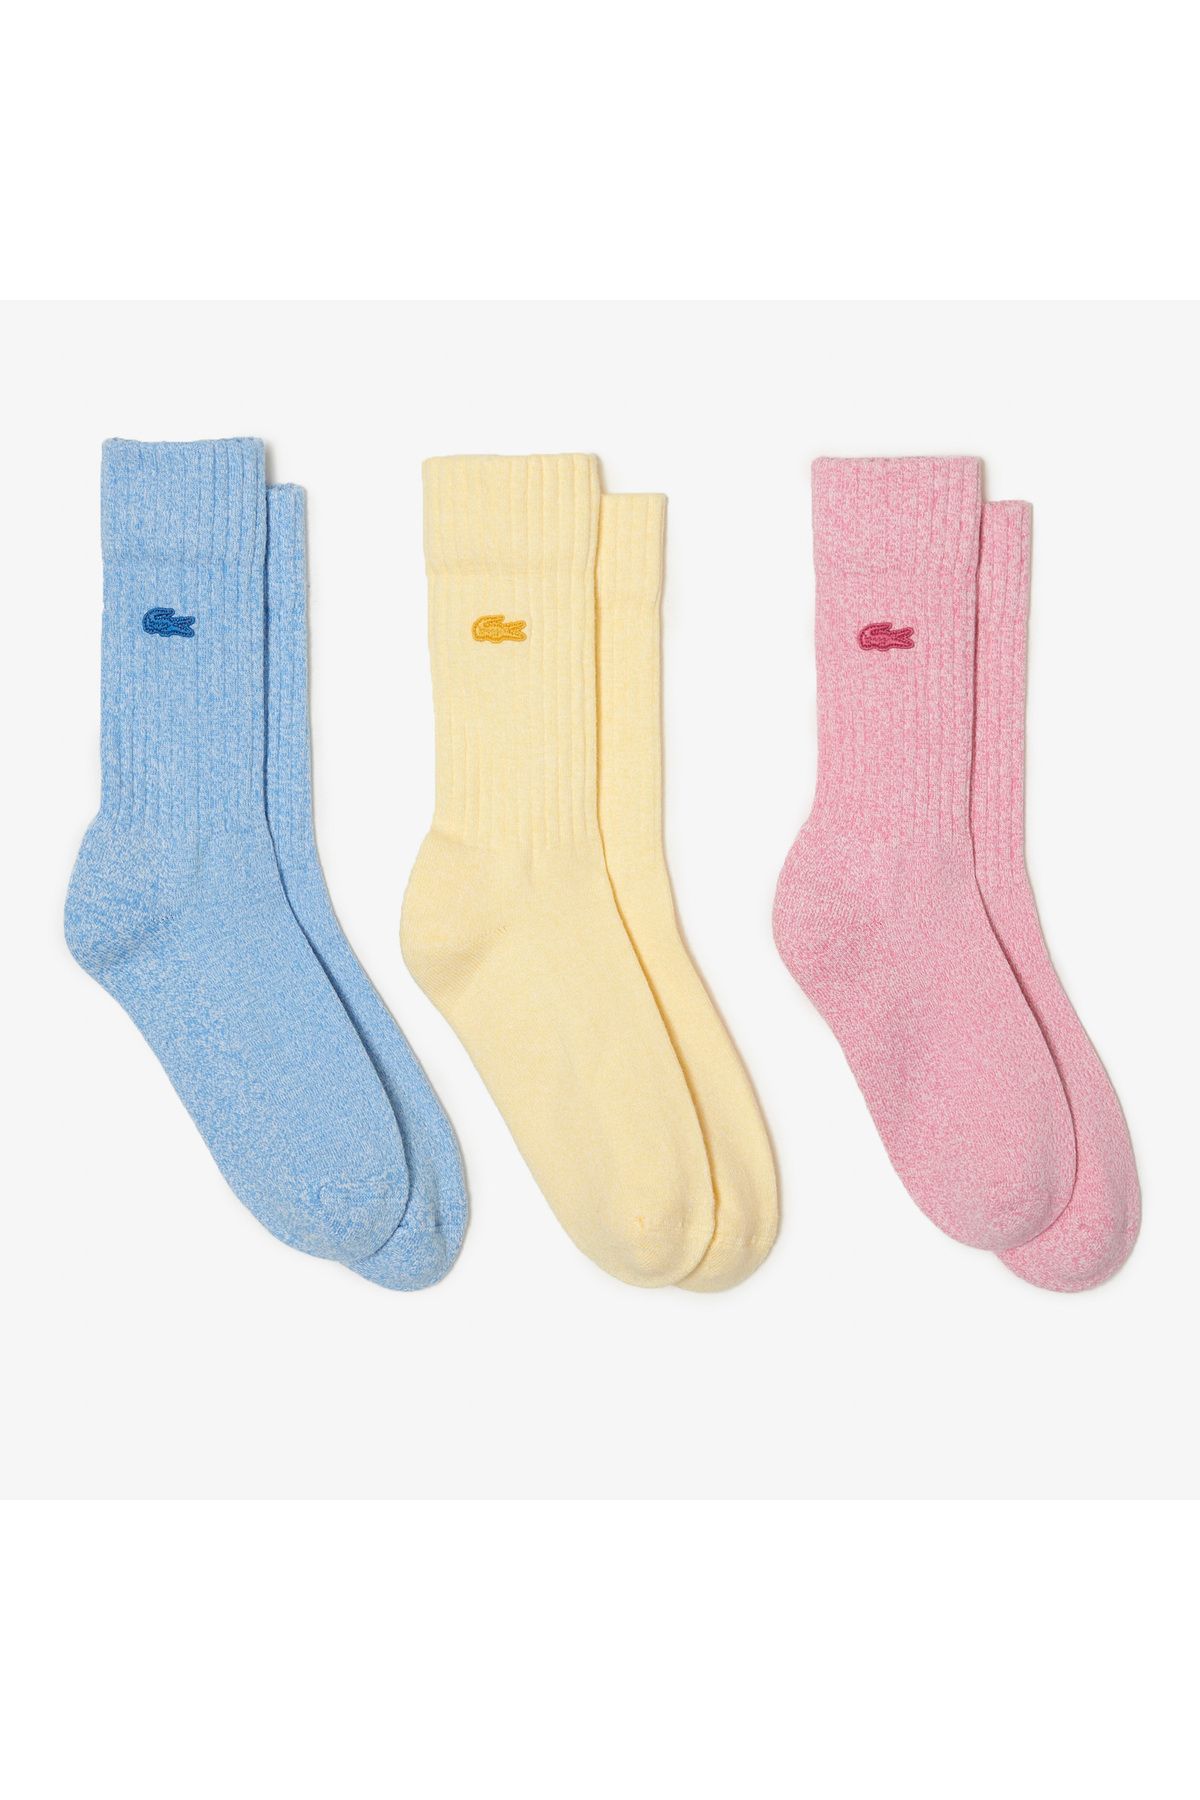 Lacoste Unisex 3'lü Renkli Çorap